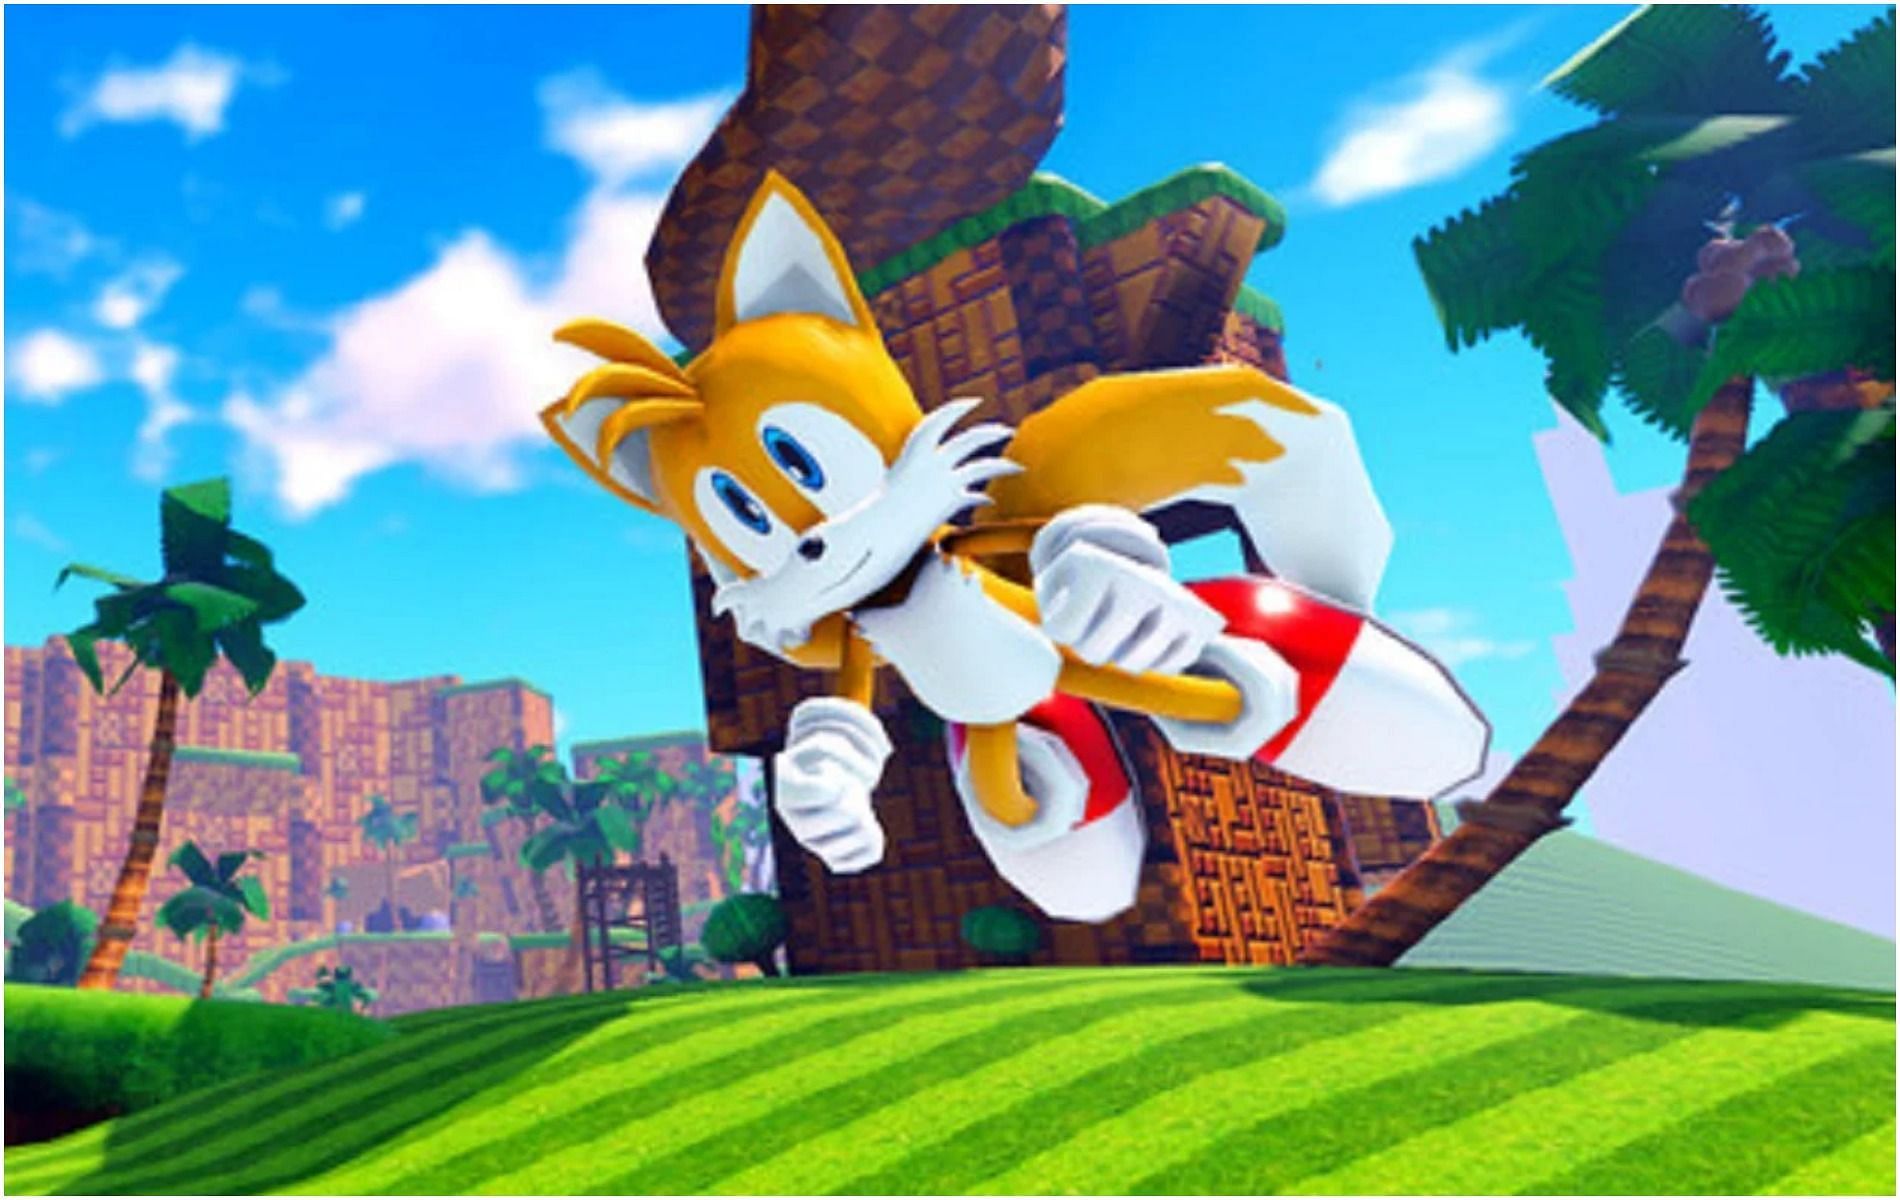 Tails takes to the skies (image via Sega)